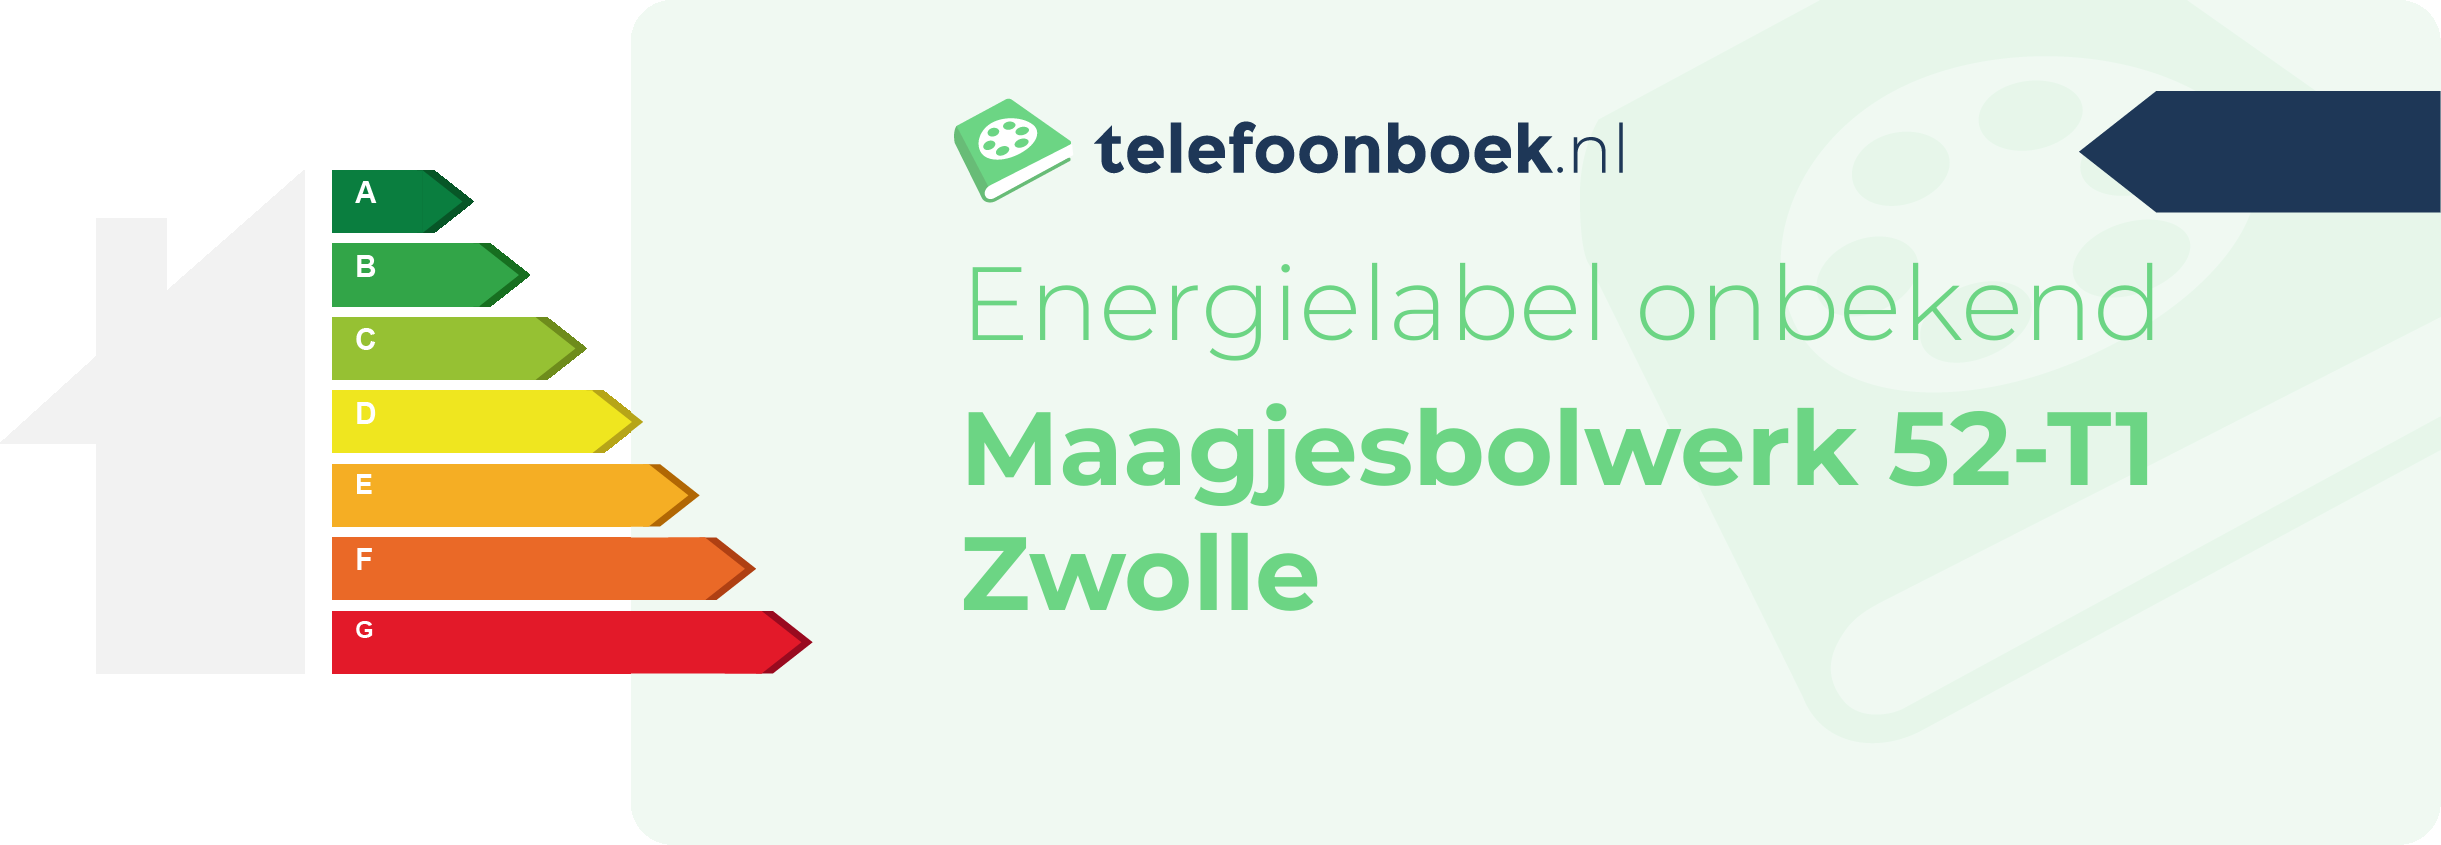 Energielabel Maagjesbolwerk 52-T1 Zwolle